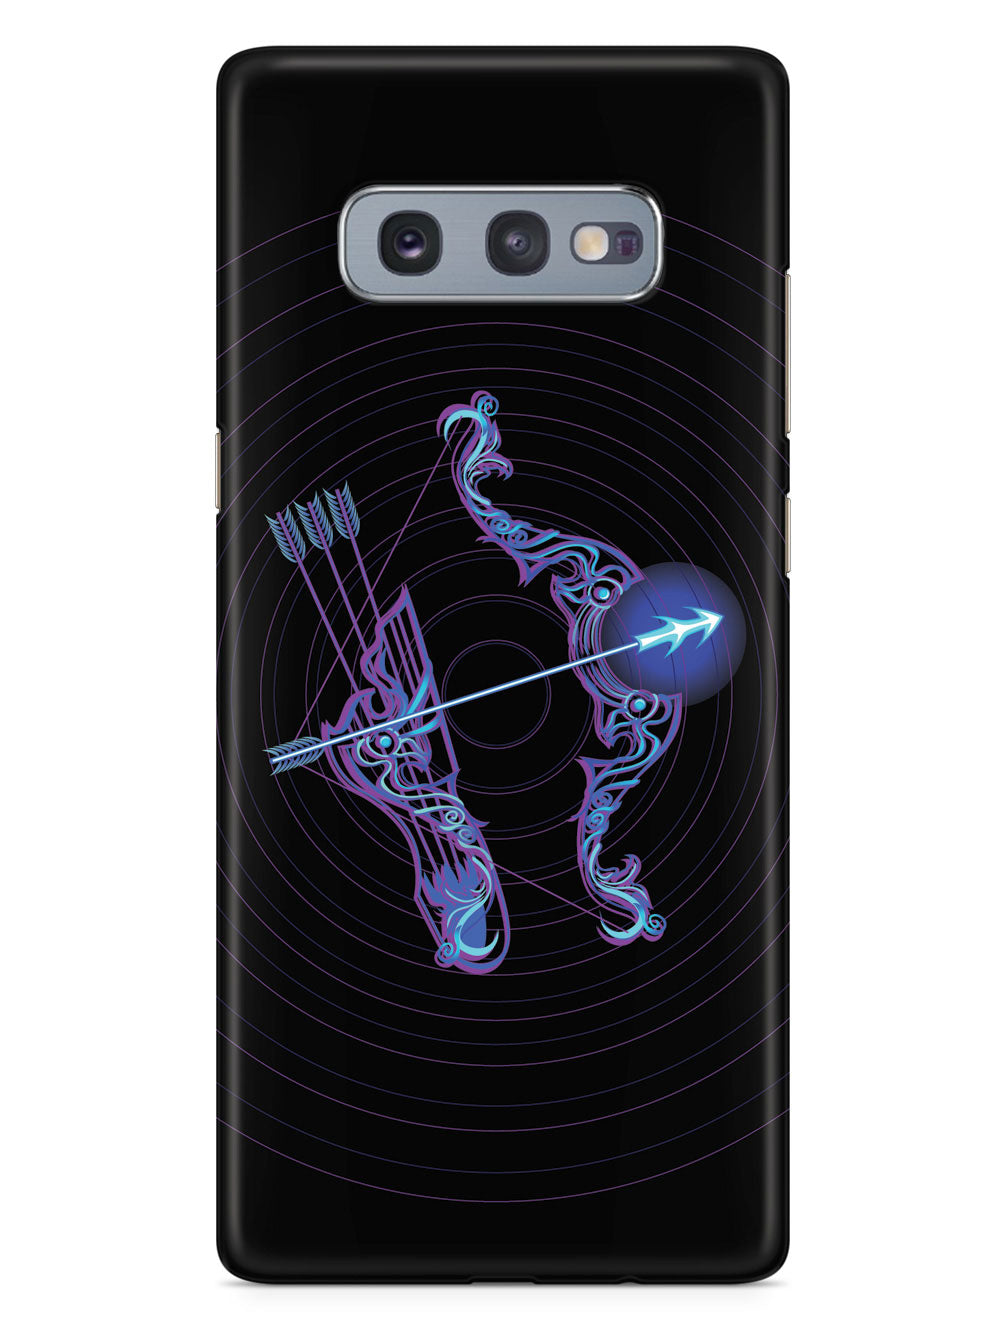 Neon Zodiac - Sagittarius Case